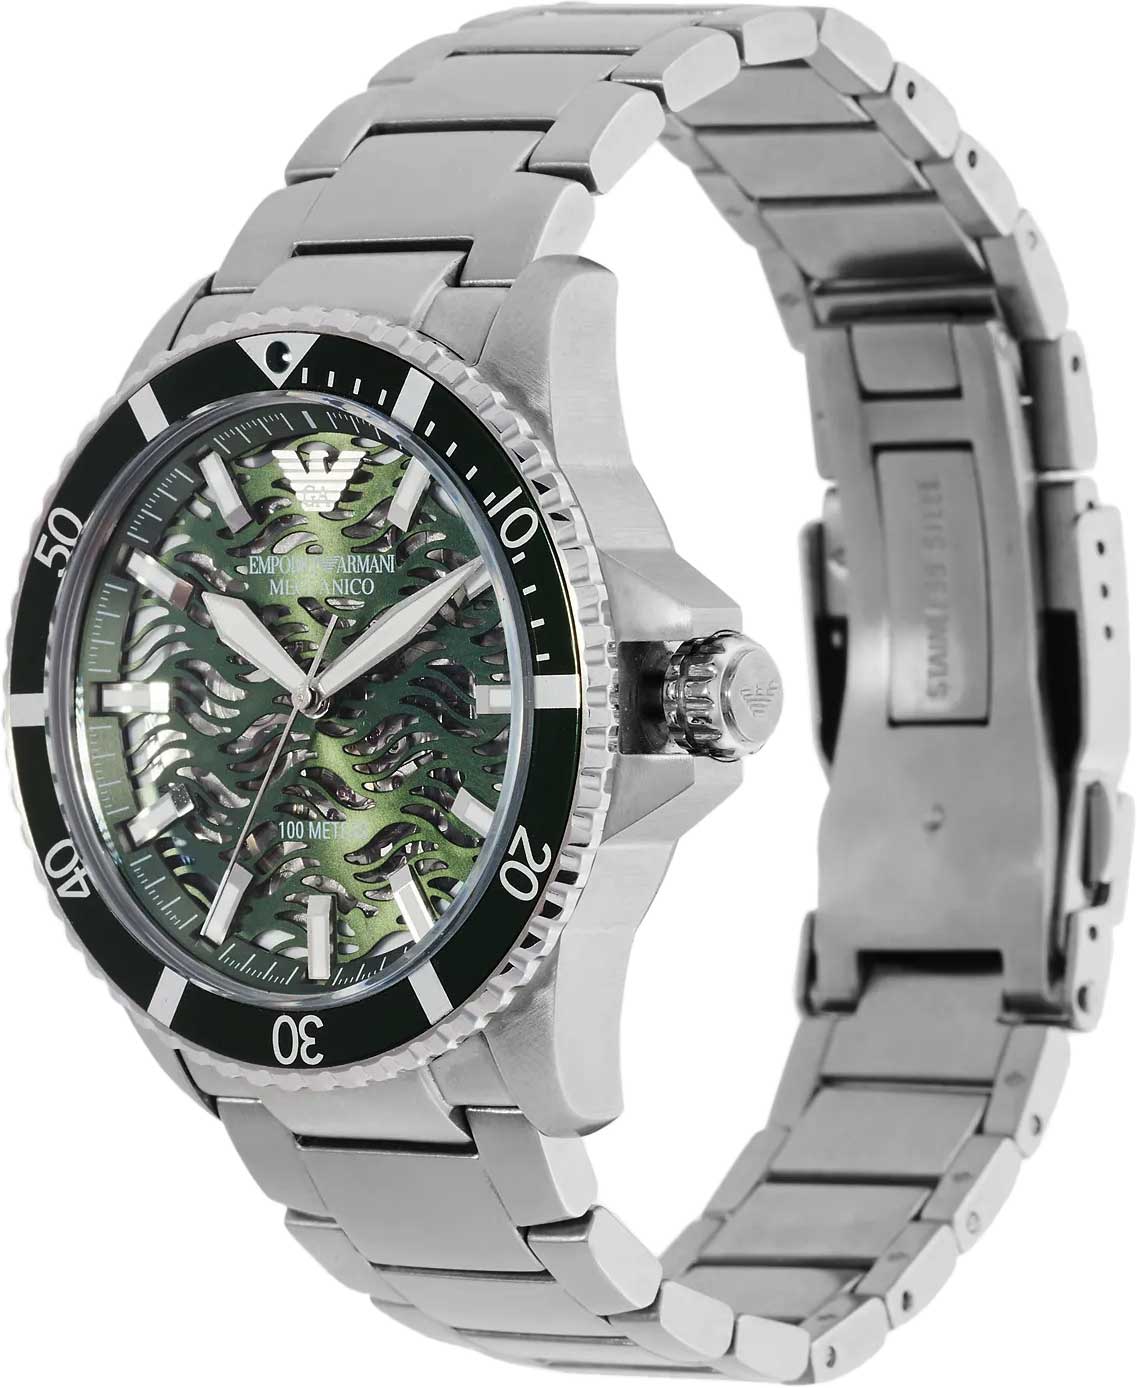 Наручные часы Emporio Armani AR60061 купить цене, фото, характеристики, — интернет-магазине лучшей описание инструкция, AllTime.ru в по